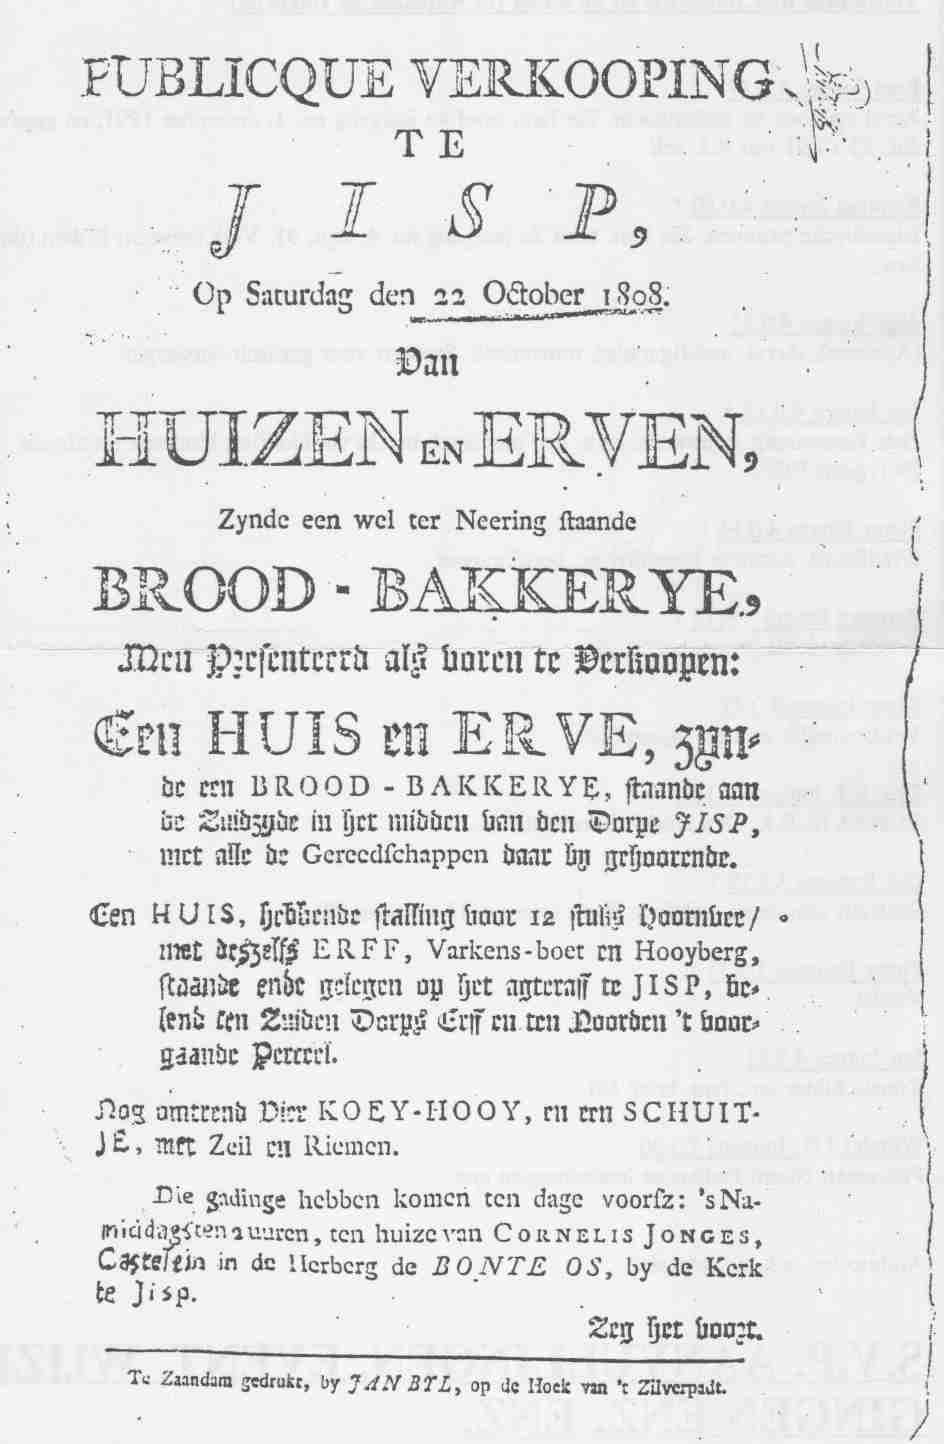 Publieke verkoping in herberg van Cornelis Jonges 1.0.29